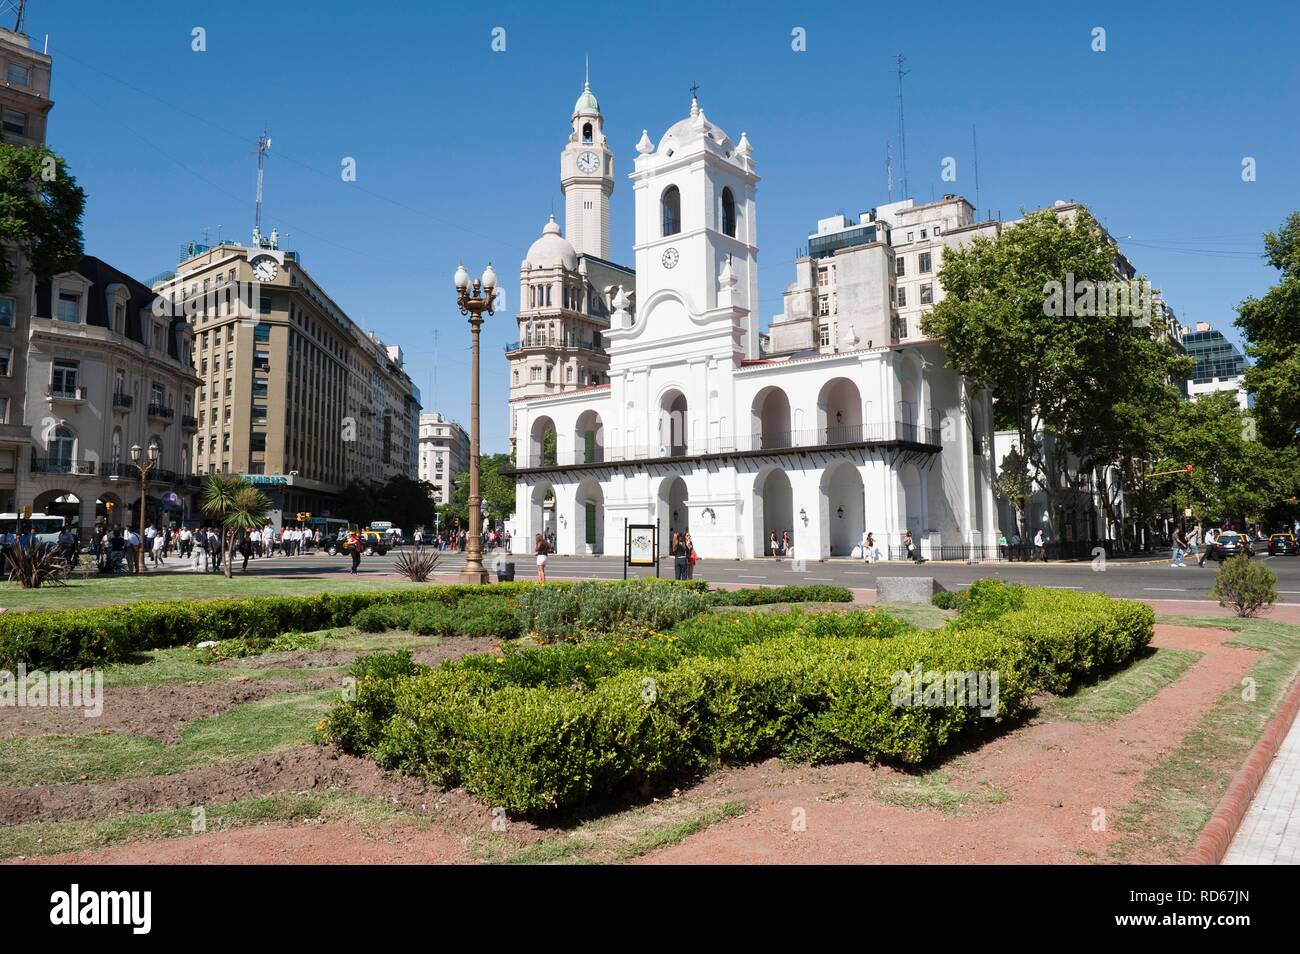 Cabildo, Plaza de Mayo square, Buenos Aires, Argentina, South America Stock Photo